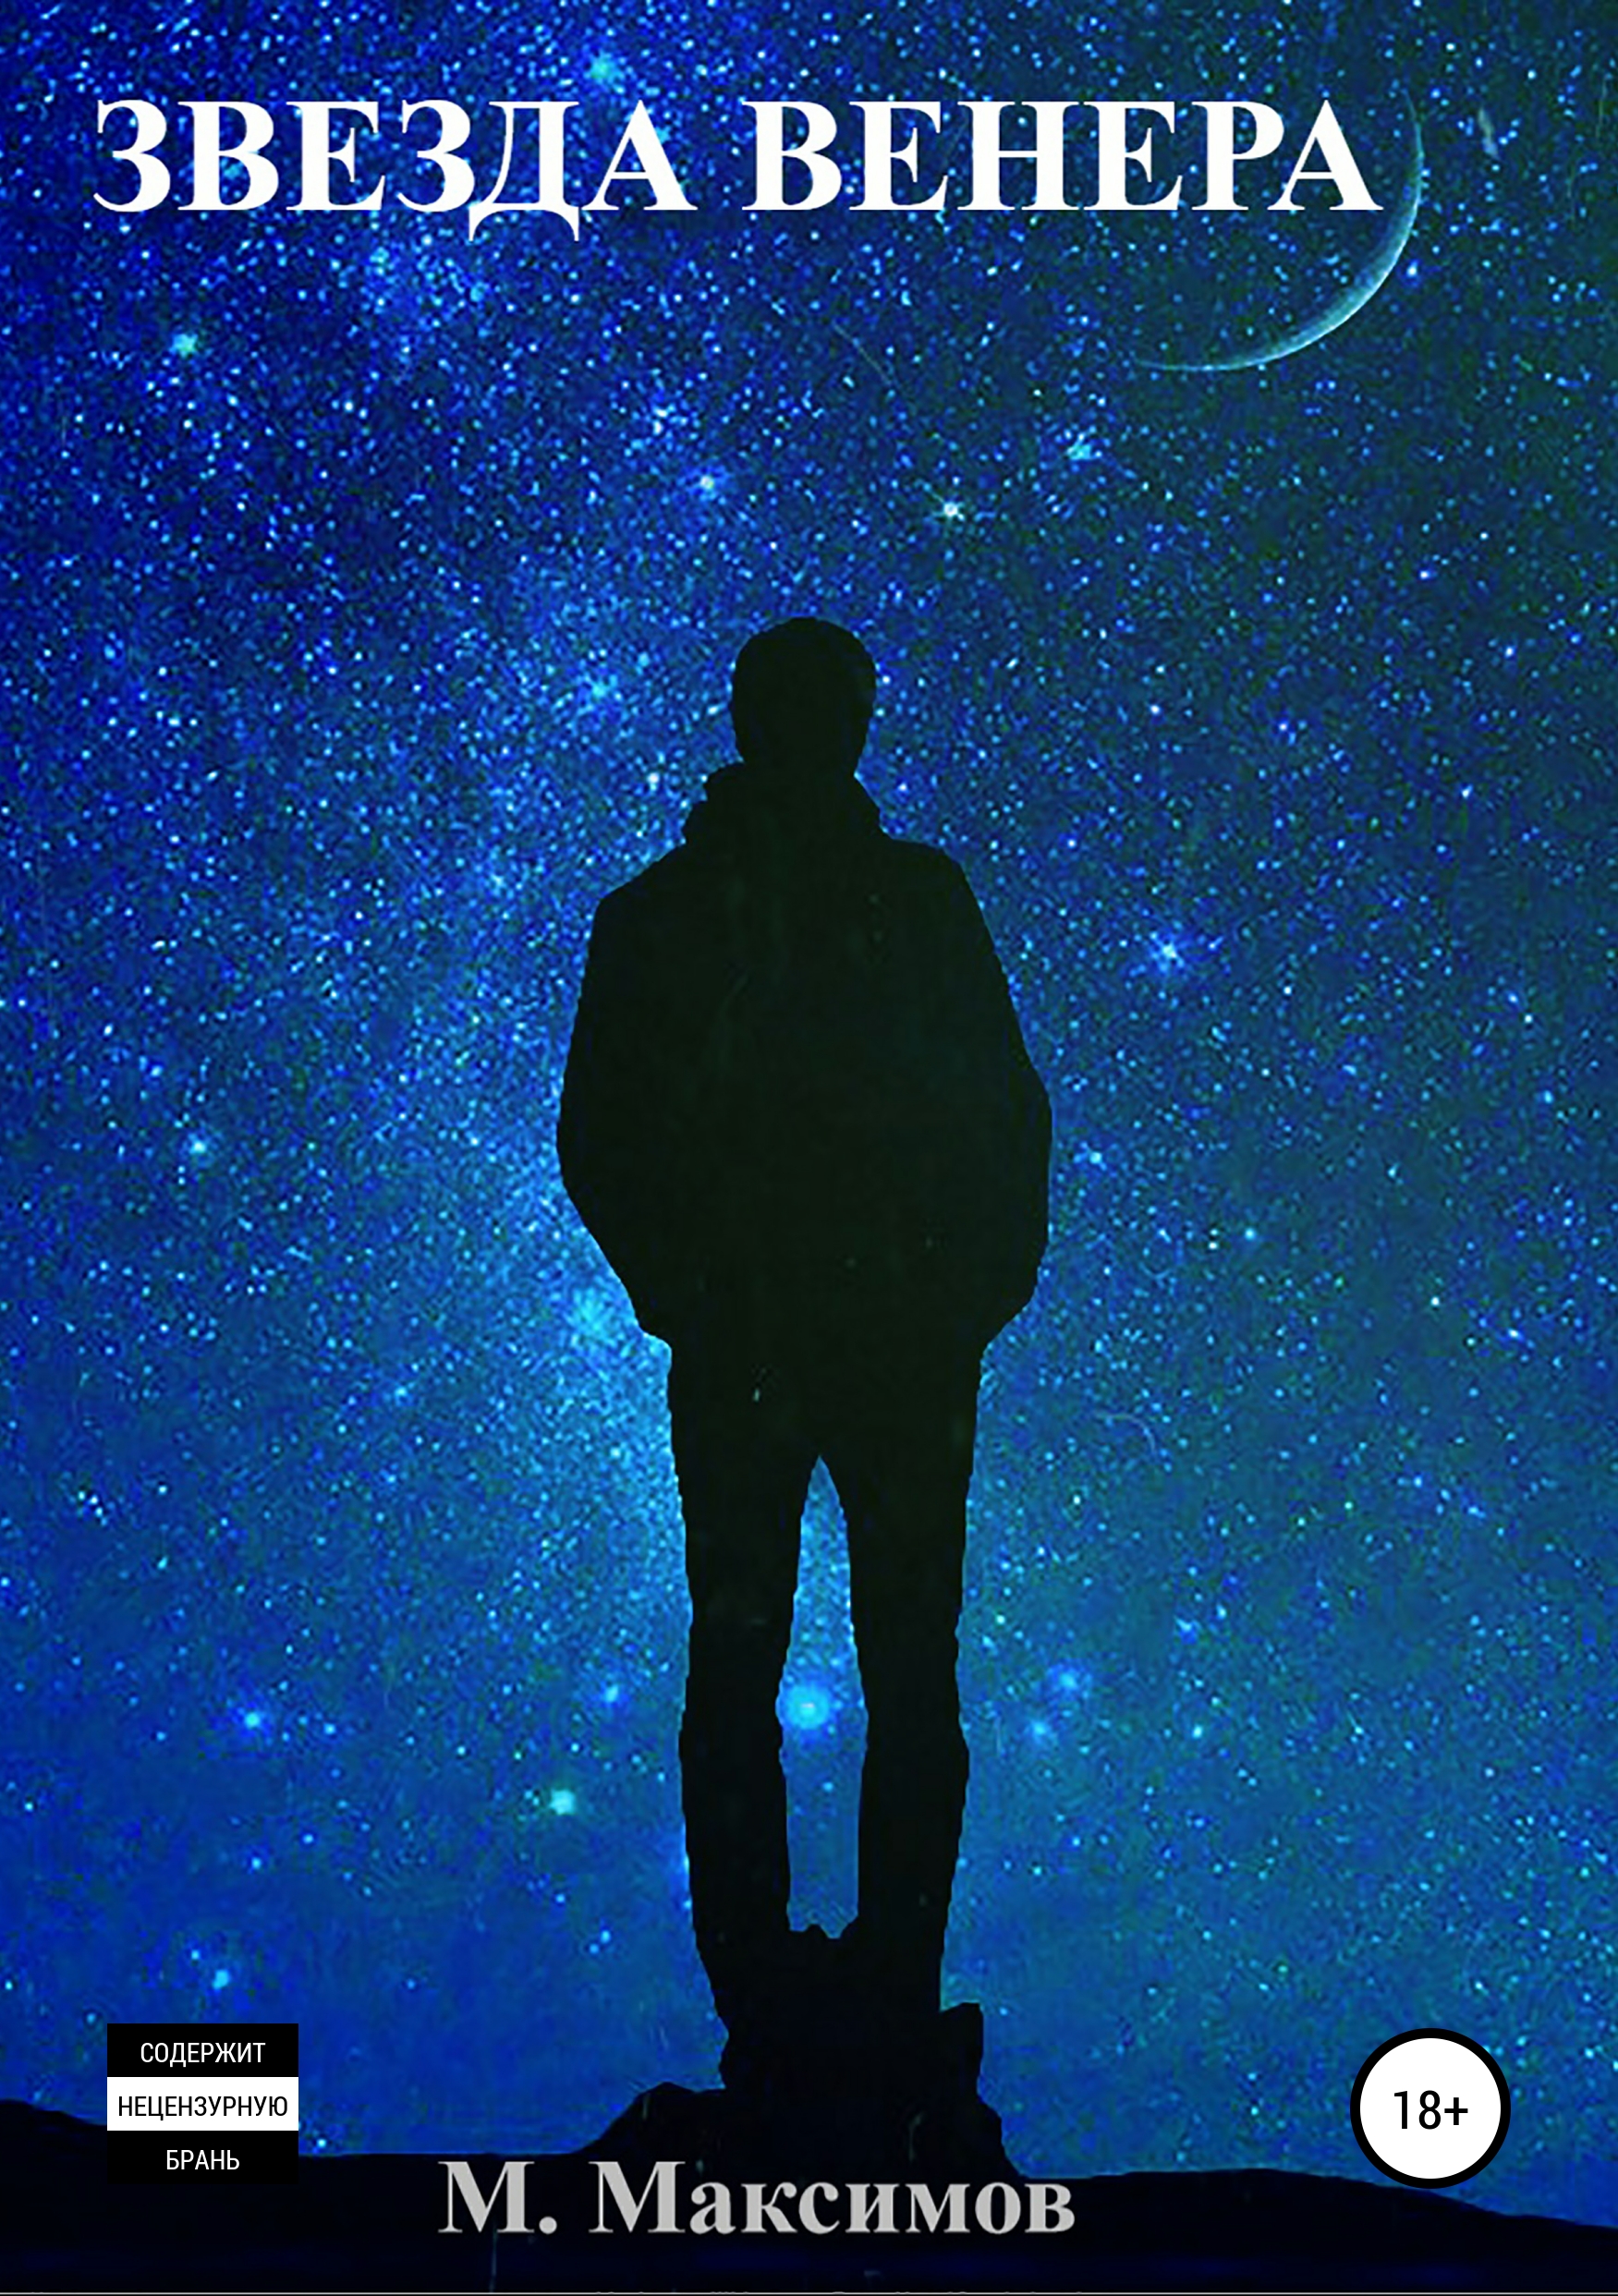 Звезды пошли. Человек в ночи. Человек под звездами. Звездное небо и человек. Человек под звездным небом.